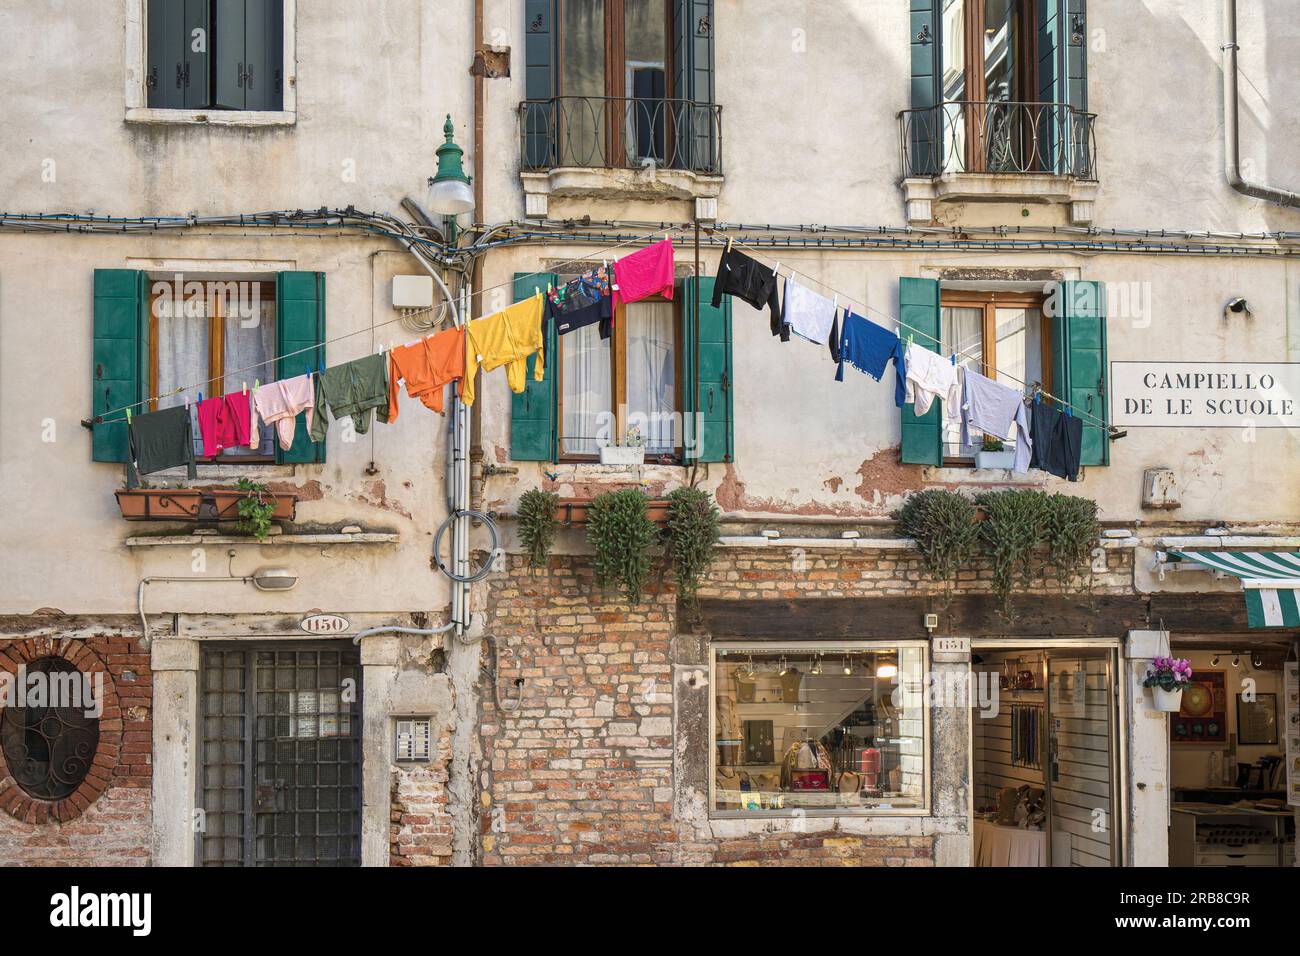 Scena tipica a Campiello de le scuole, Venezia, Italia. Lavare appeso in fila fuori dagli appartamenti e dai negozi sottostanti. Venezia è un patrimonio mondiale dell'UNESCO Foto Stock